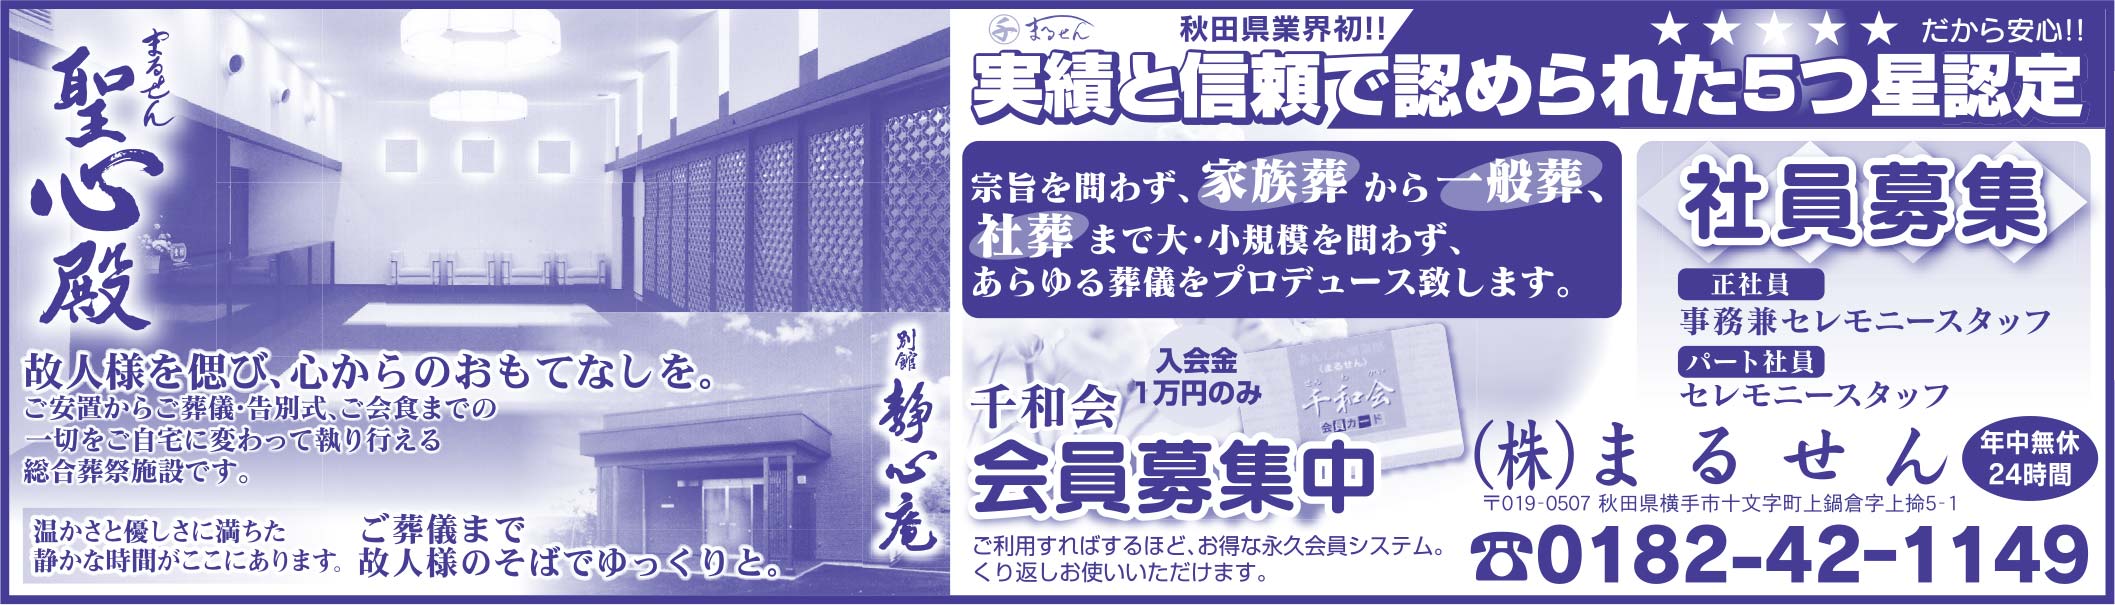 (株)まるせん様の2022新春号 横手版広告